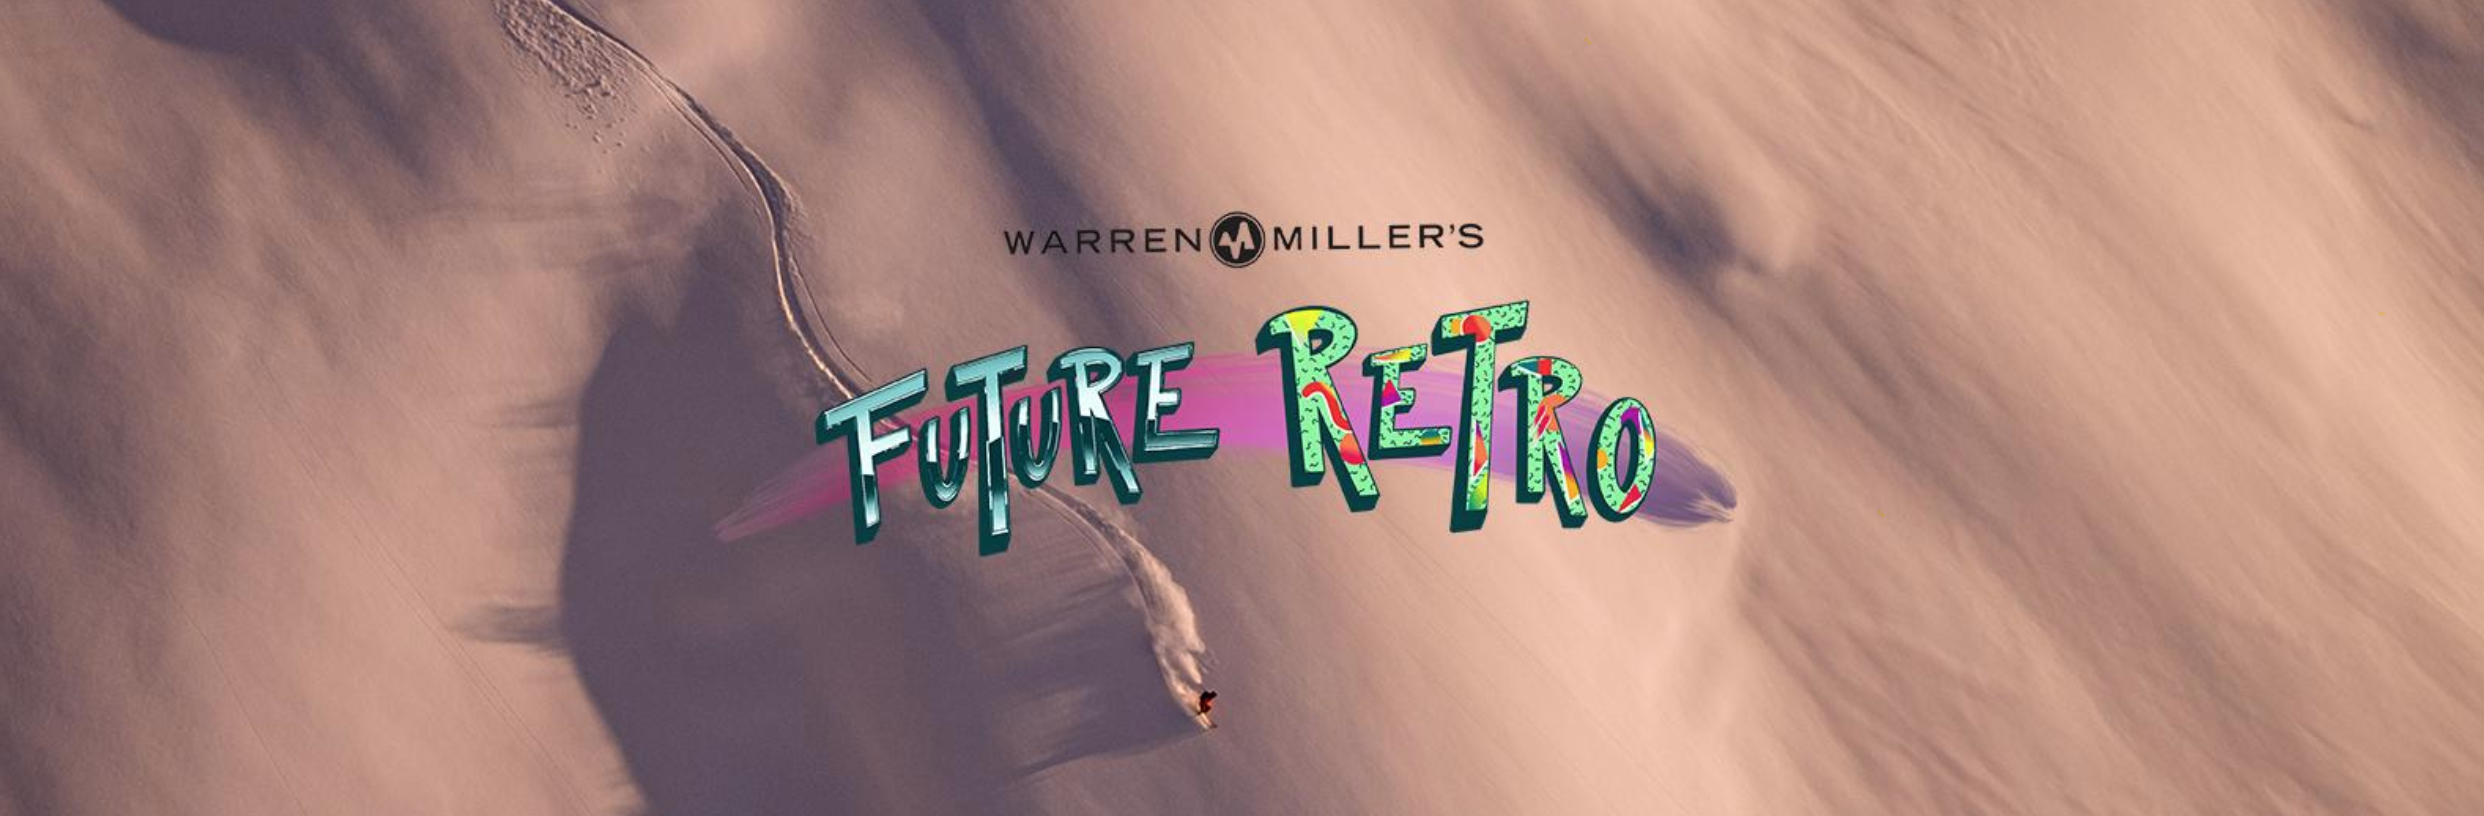 Warren Miller Future Retro